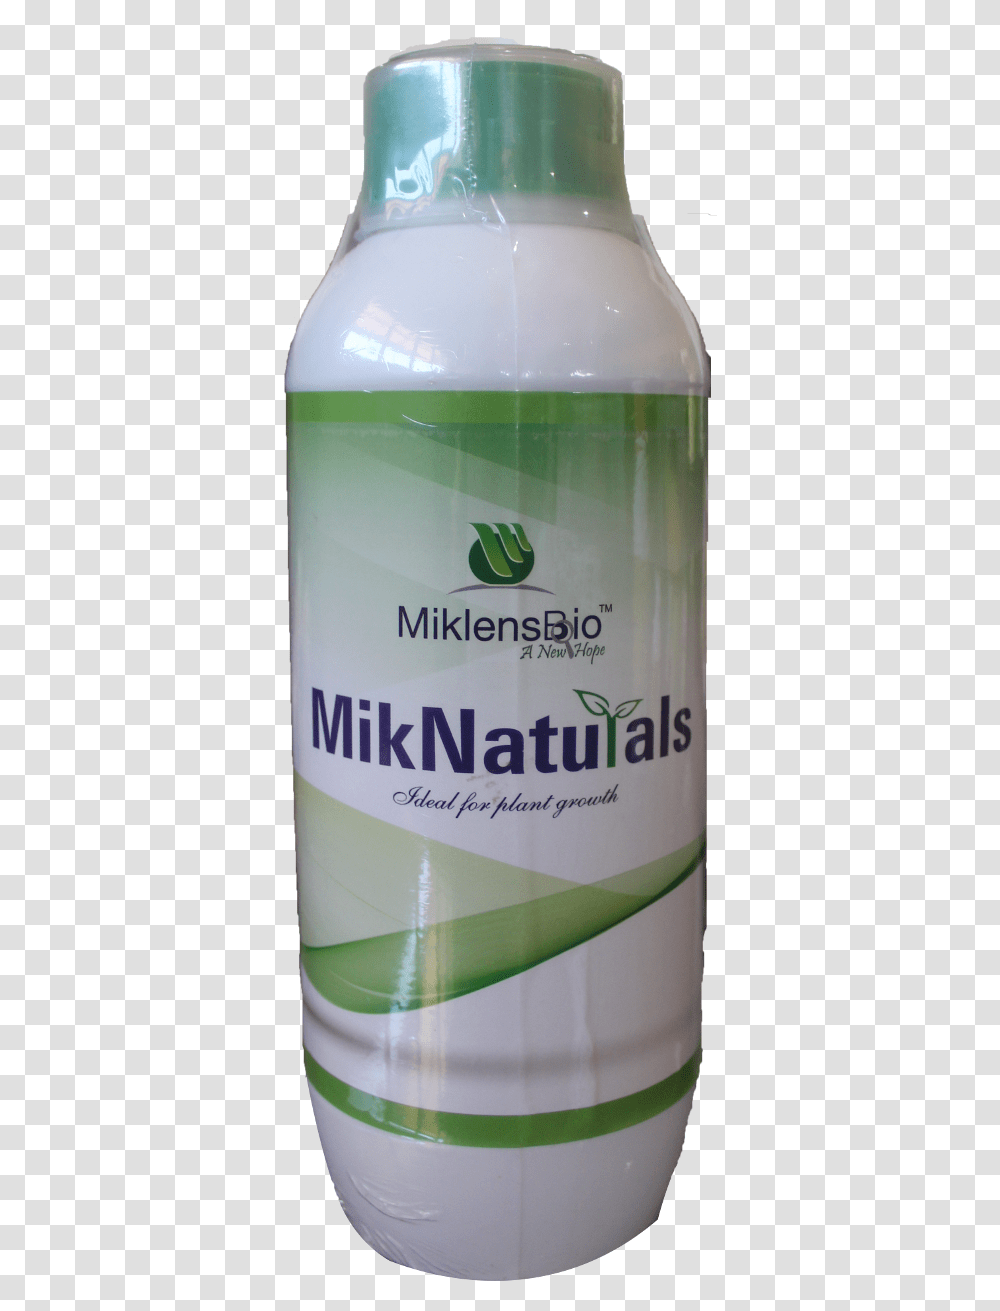 Miknaturals Ncrr, Bottle, Beverage, Drink, Alcohol Transparent Png